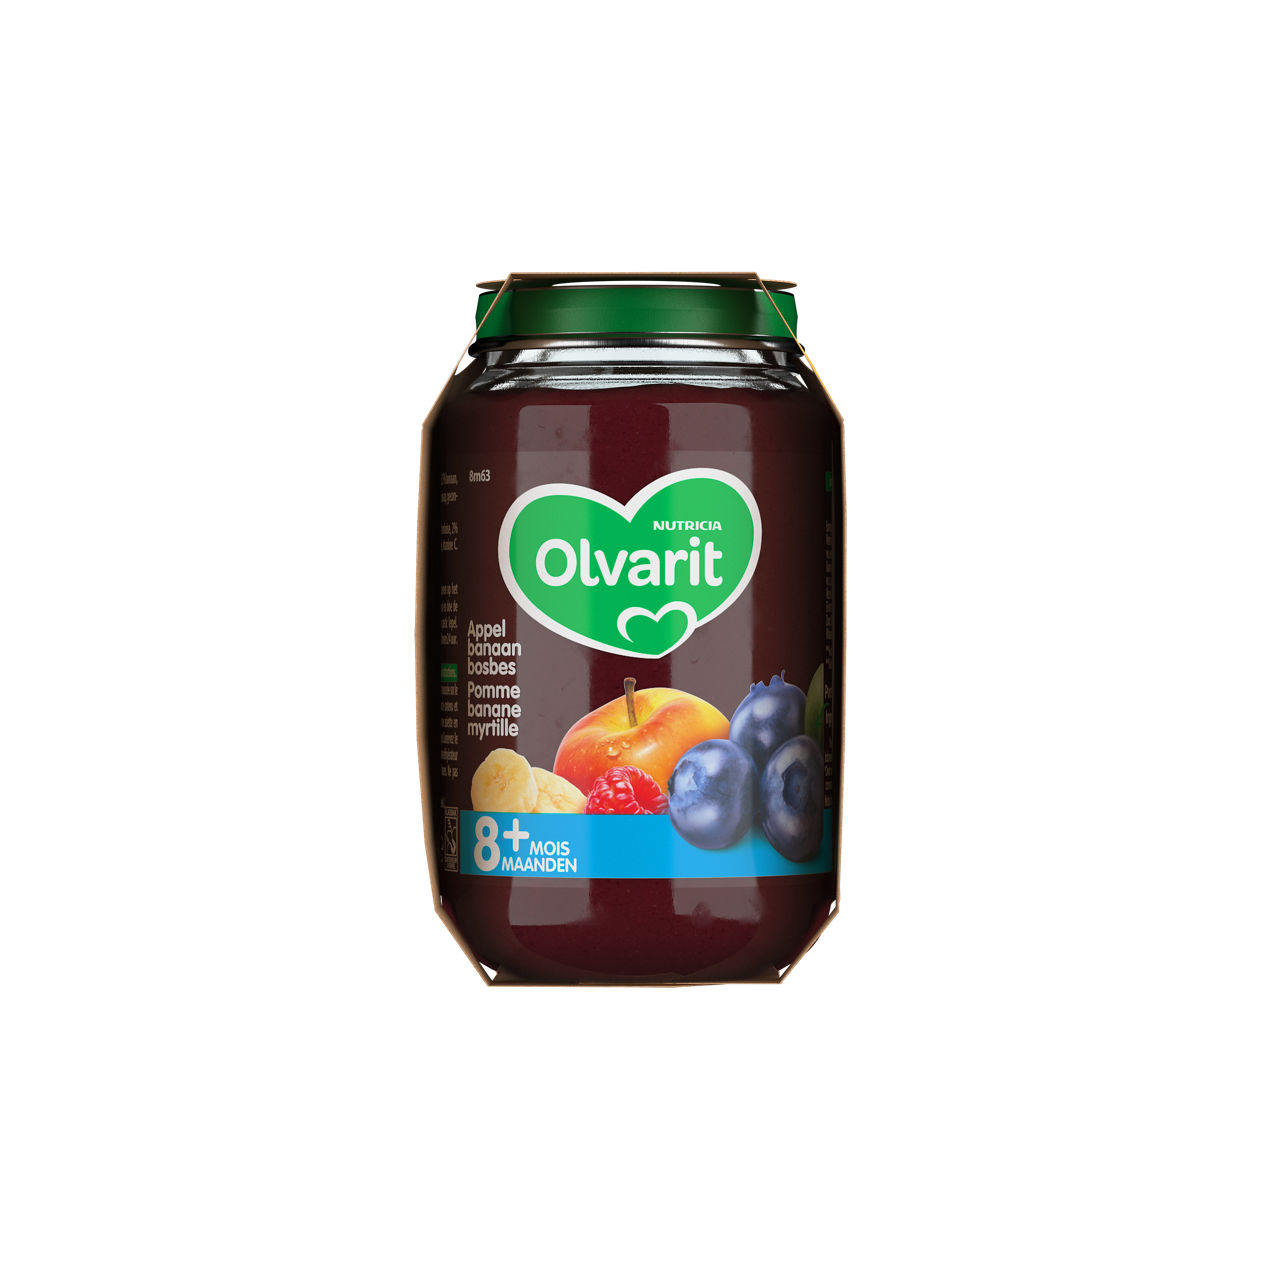 Consultez notre site web Olvarit.be pour plus d'info sur alimentation pour bébé et les produits Olvarit.